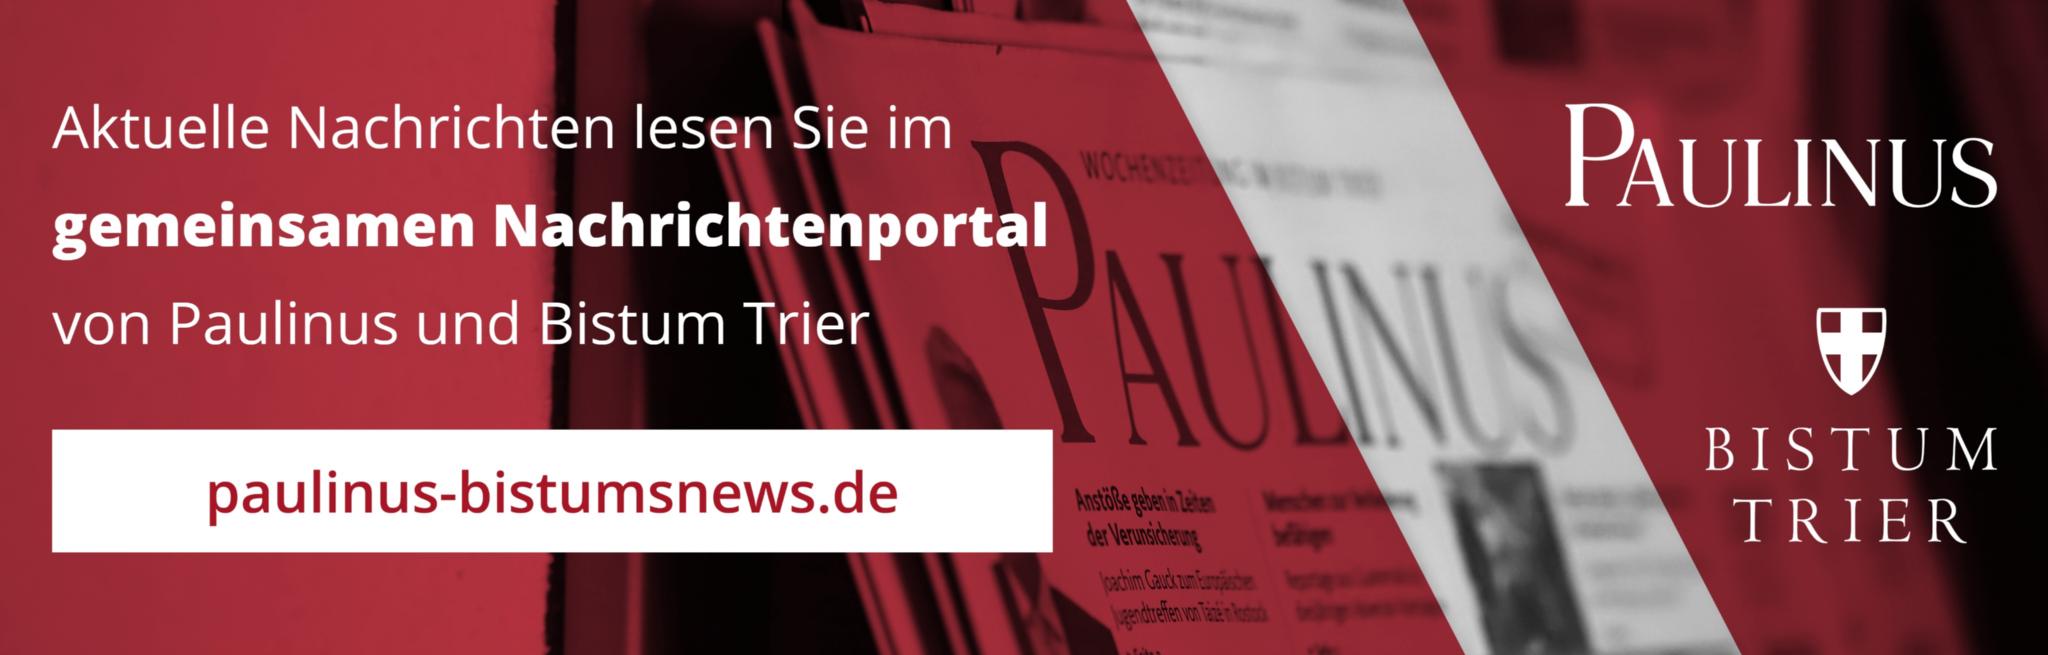 Aktuelle Nachrichten lesen Sie im gemeinsamen Newsportal von Paulinus und Bistum Trier paulinus-bistumsnews.de